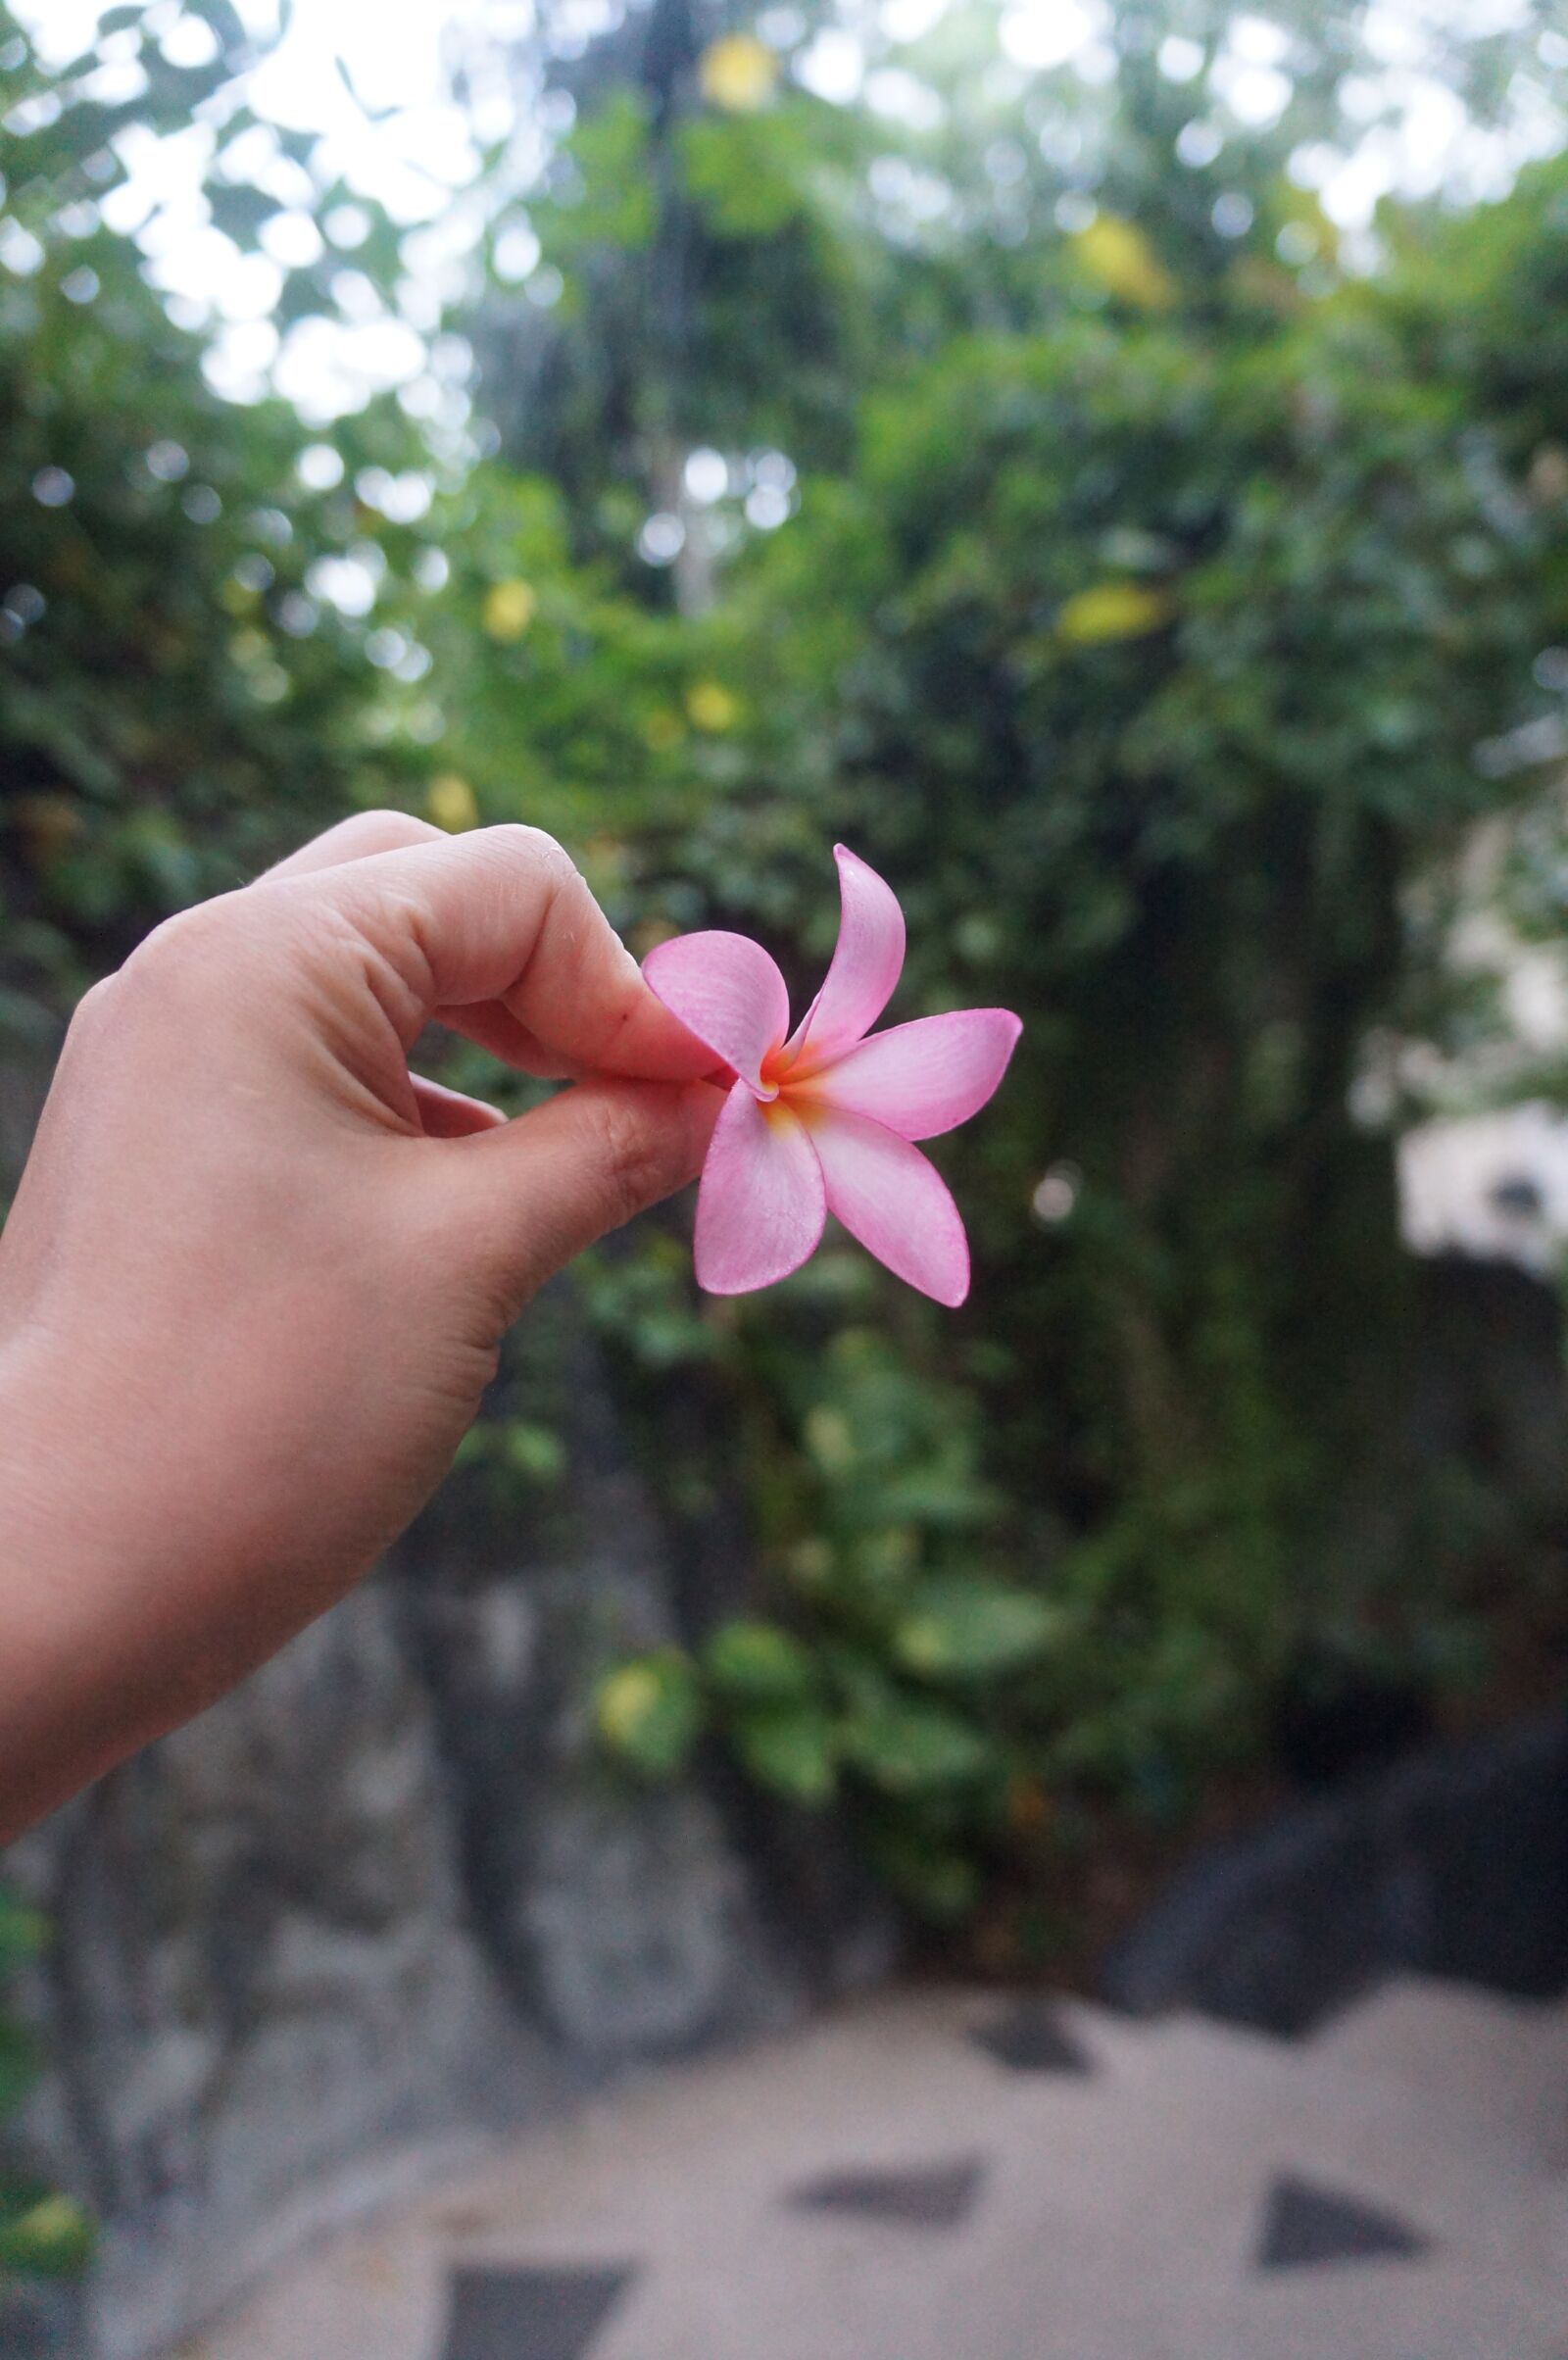 Sony Alpha NEX-F3 sample photo. Plumerilla, flower, cebu photography